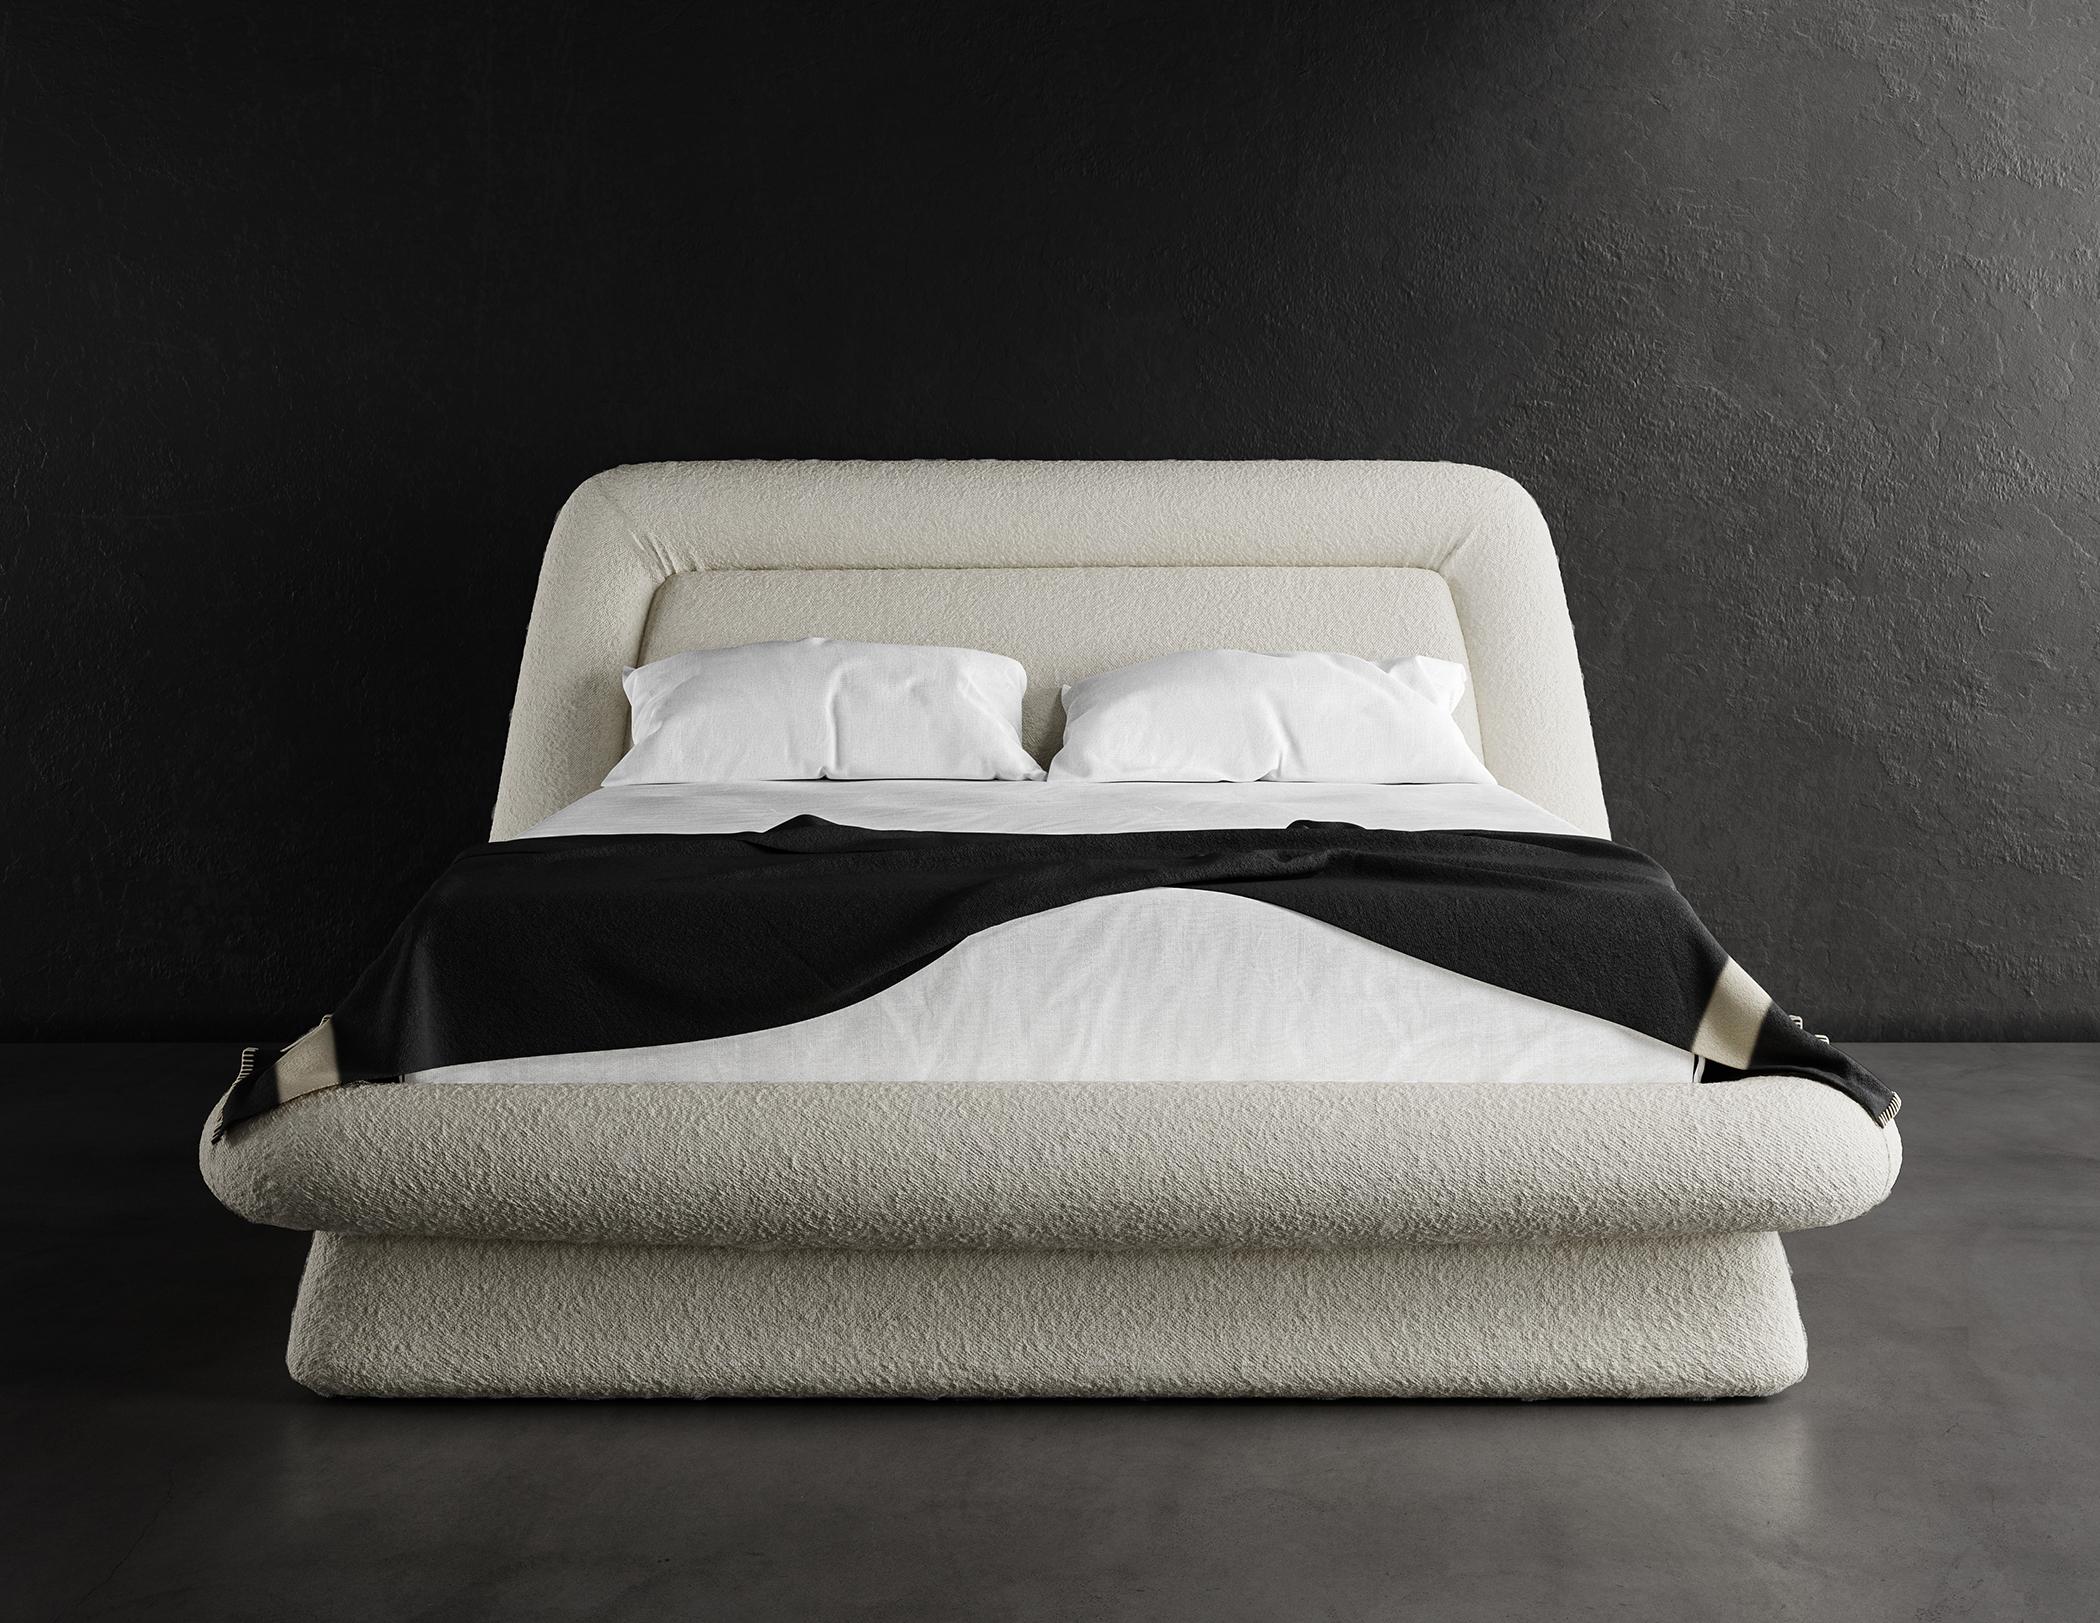 Le lit Wave en taille queen est un cadre de lit élégant et contemporain conçu pour rehausser le look de toute chambre à coucher moderne. Il est recouvert d'un luxueux tissu bouclé nuageux d'un blanc chaud qui ajoute une touche d'élégance et de